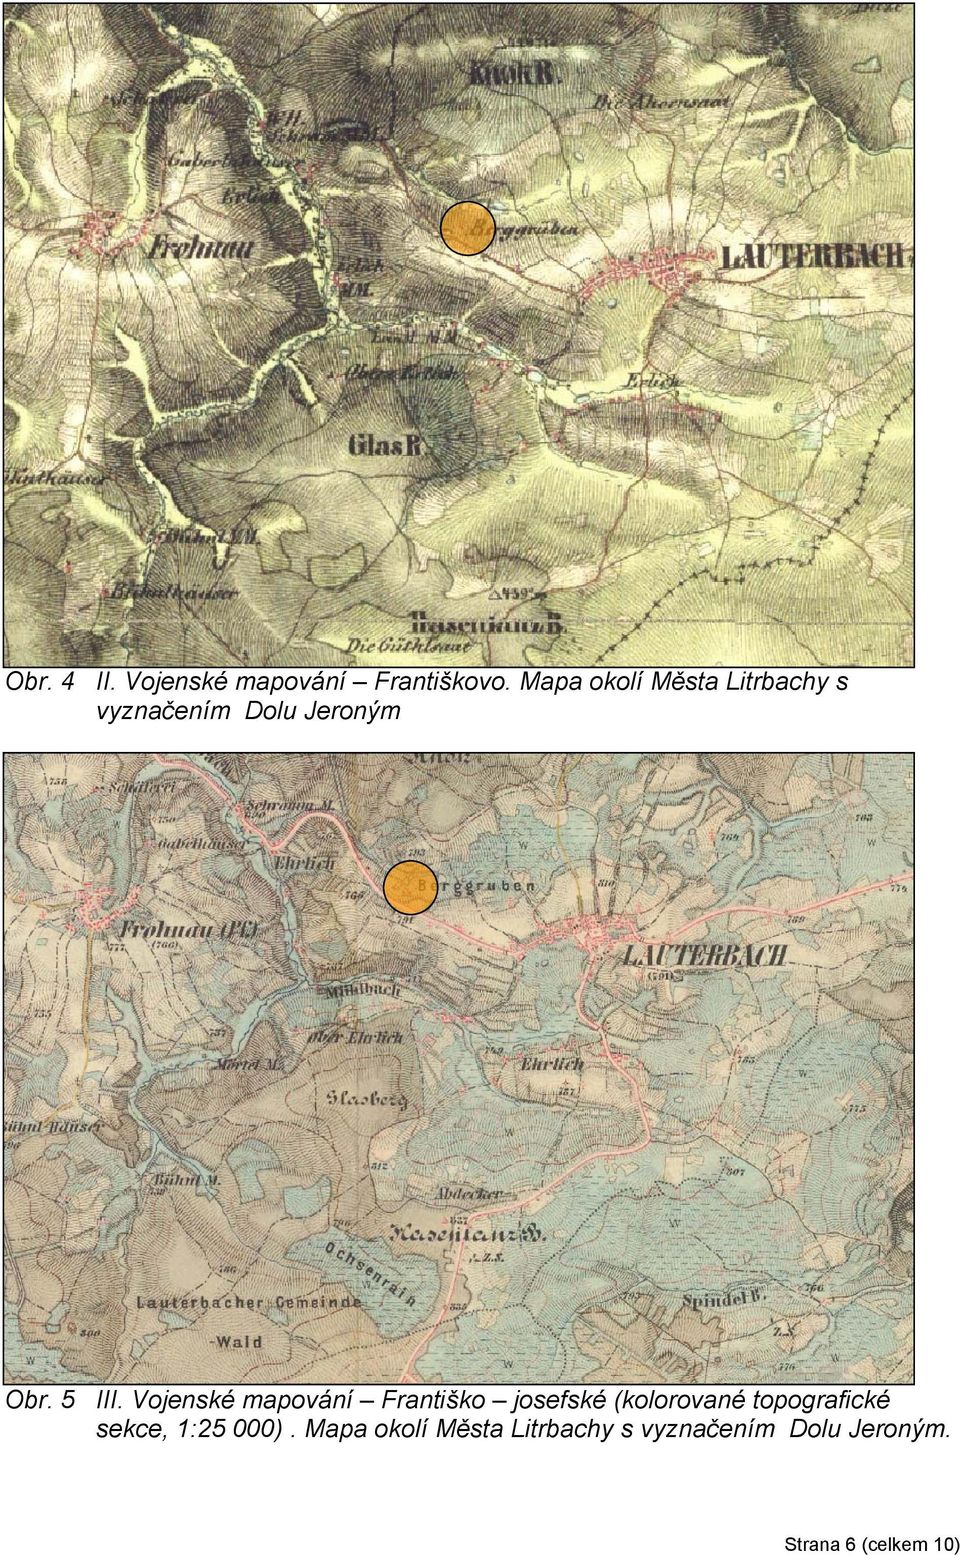 Vojenské mapování Františko josefské (kolorované topografické